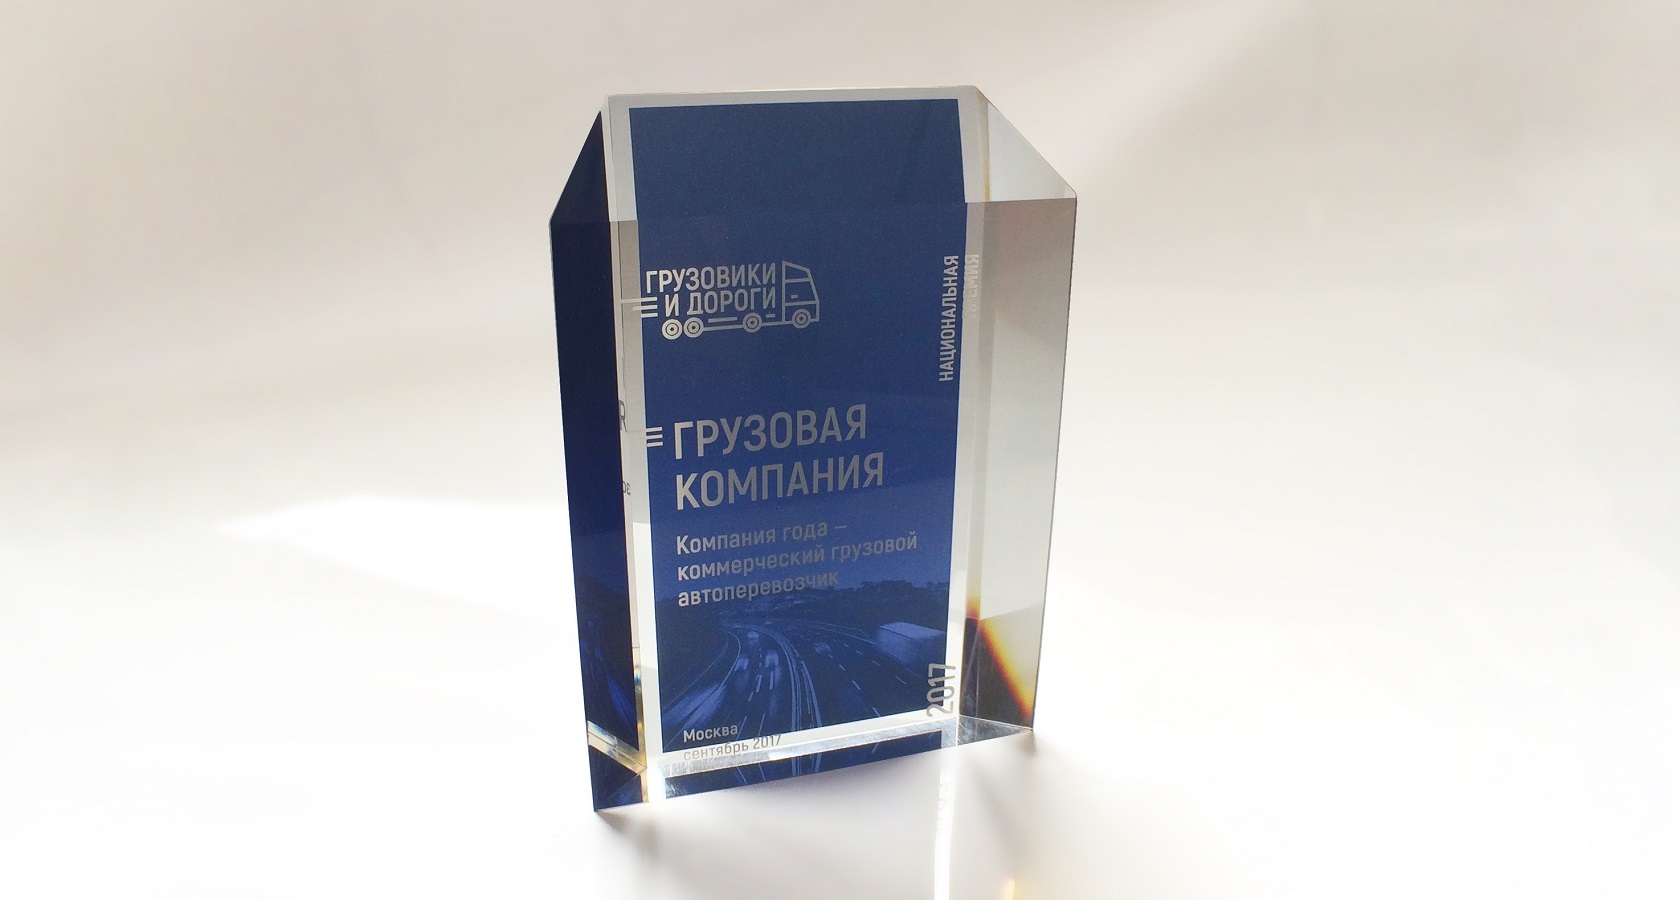 Завершен прием заявок на соискание Национальной премии «Грузовики и дороги»